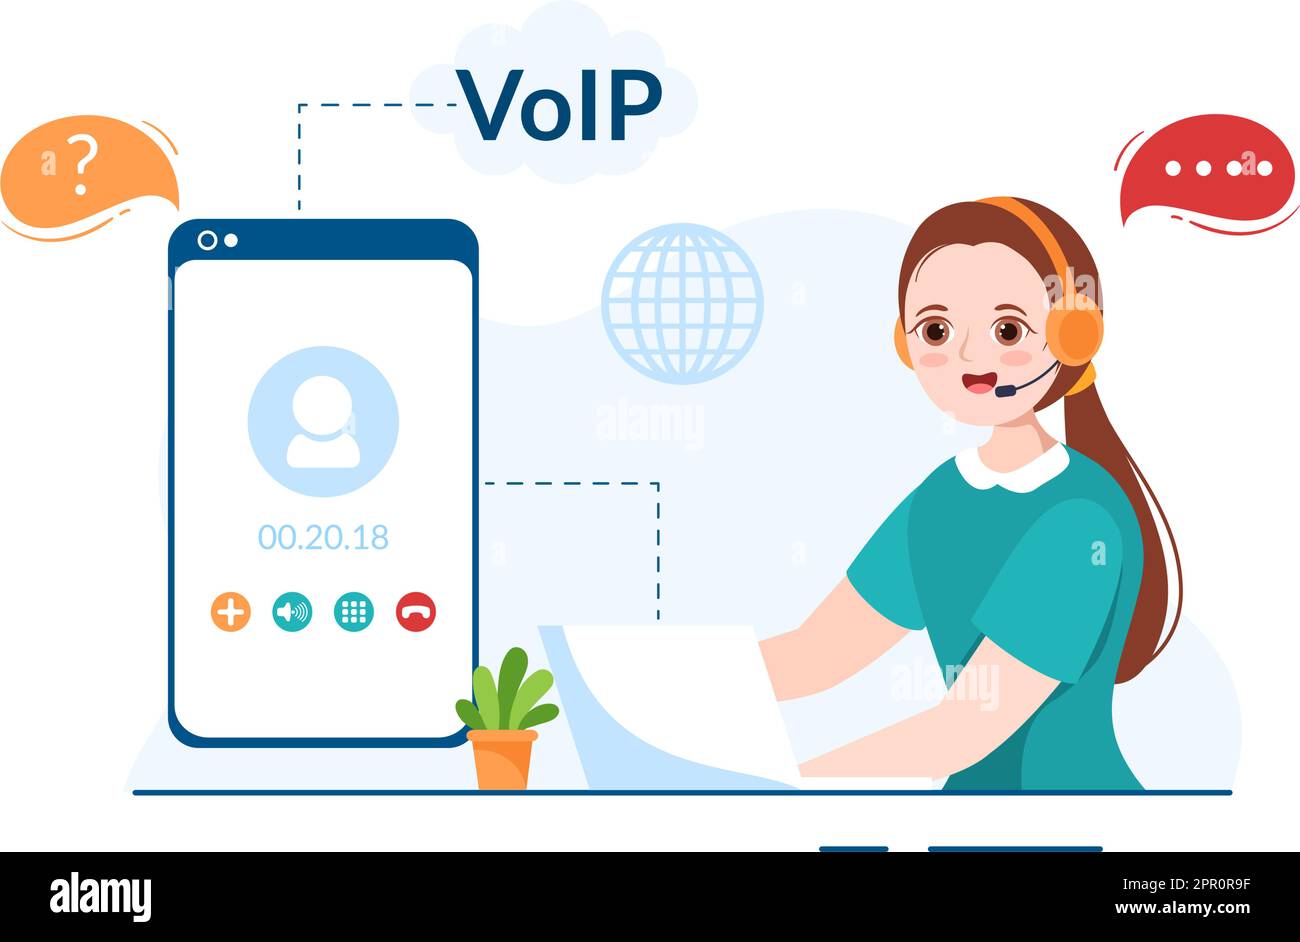 VOIP- oder Voice-over-Internet-Protokoll mit Telefonie-Scheme-Technologie und Netzwerk-Telefonanruf-Software in Vorlage Handgezeichnete Grafik flache Abbildung Stock Vektor